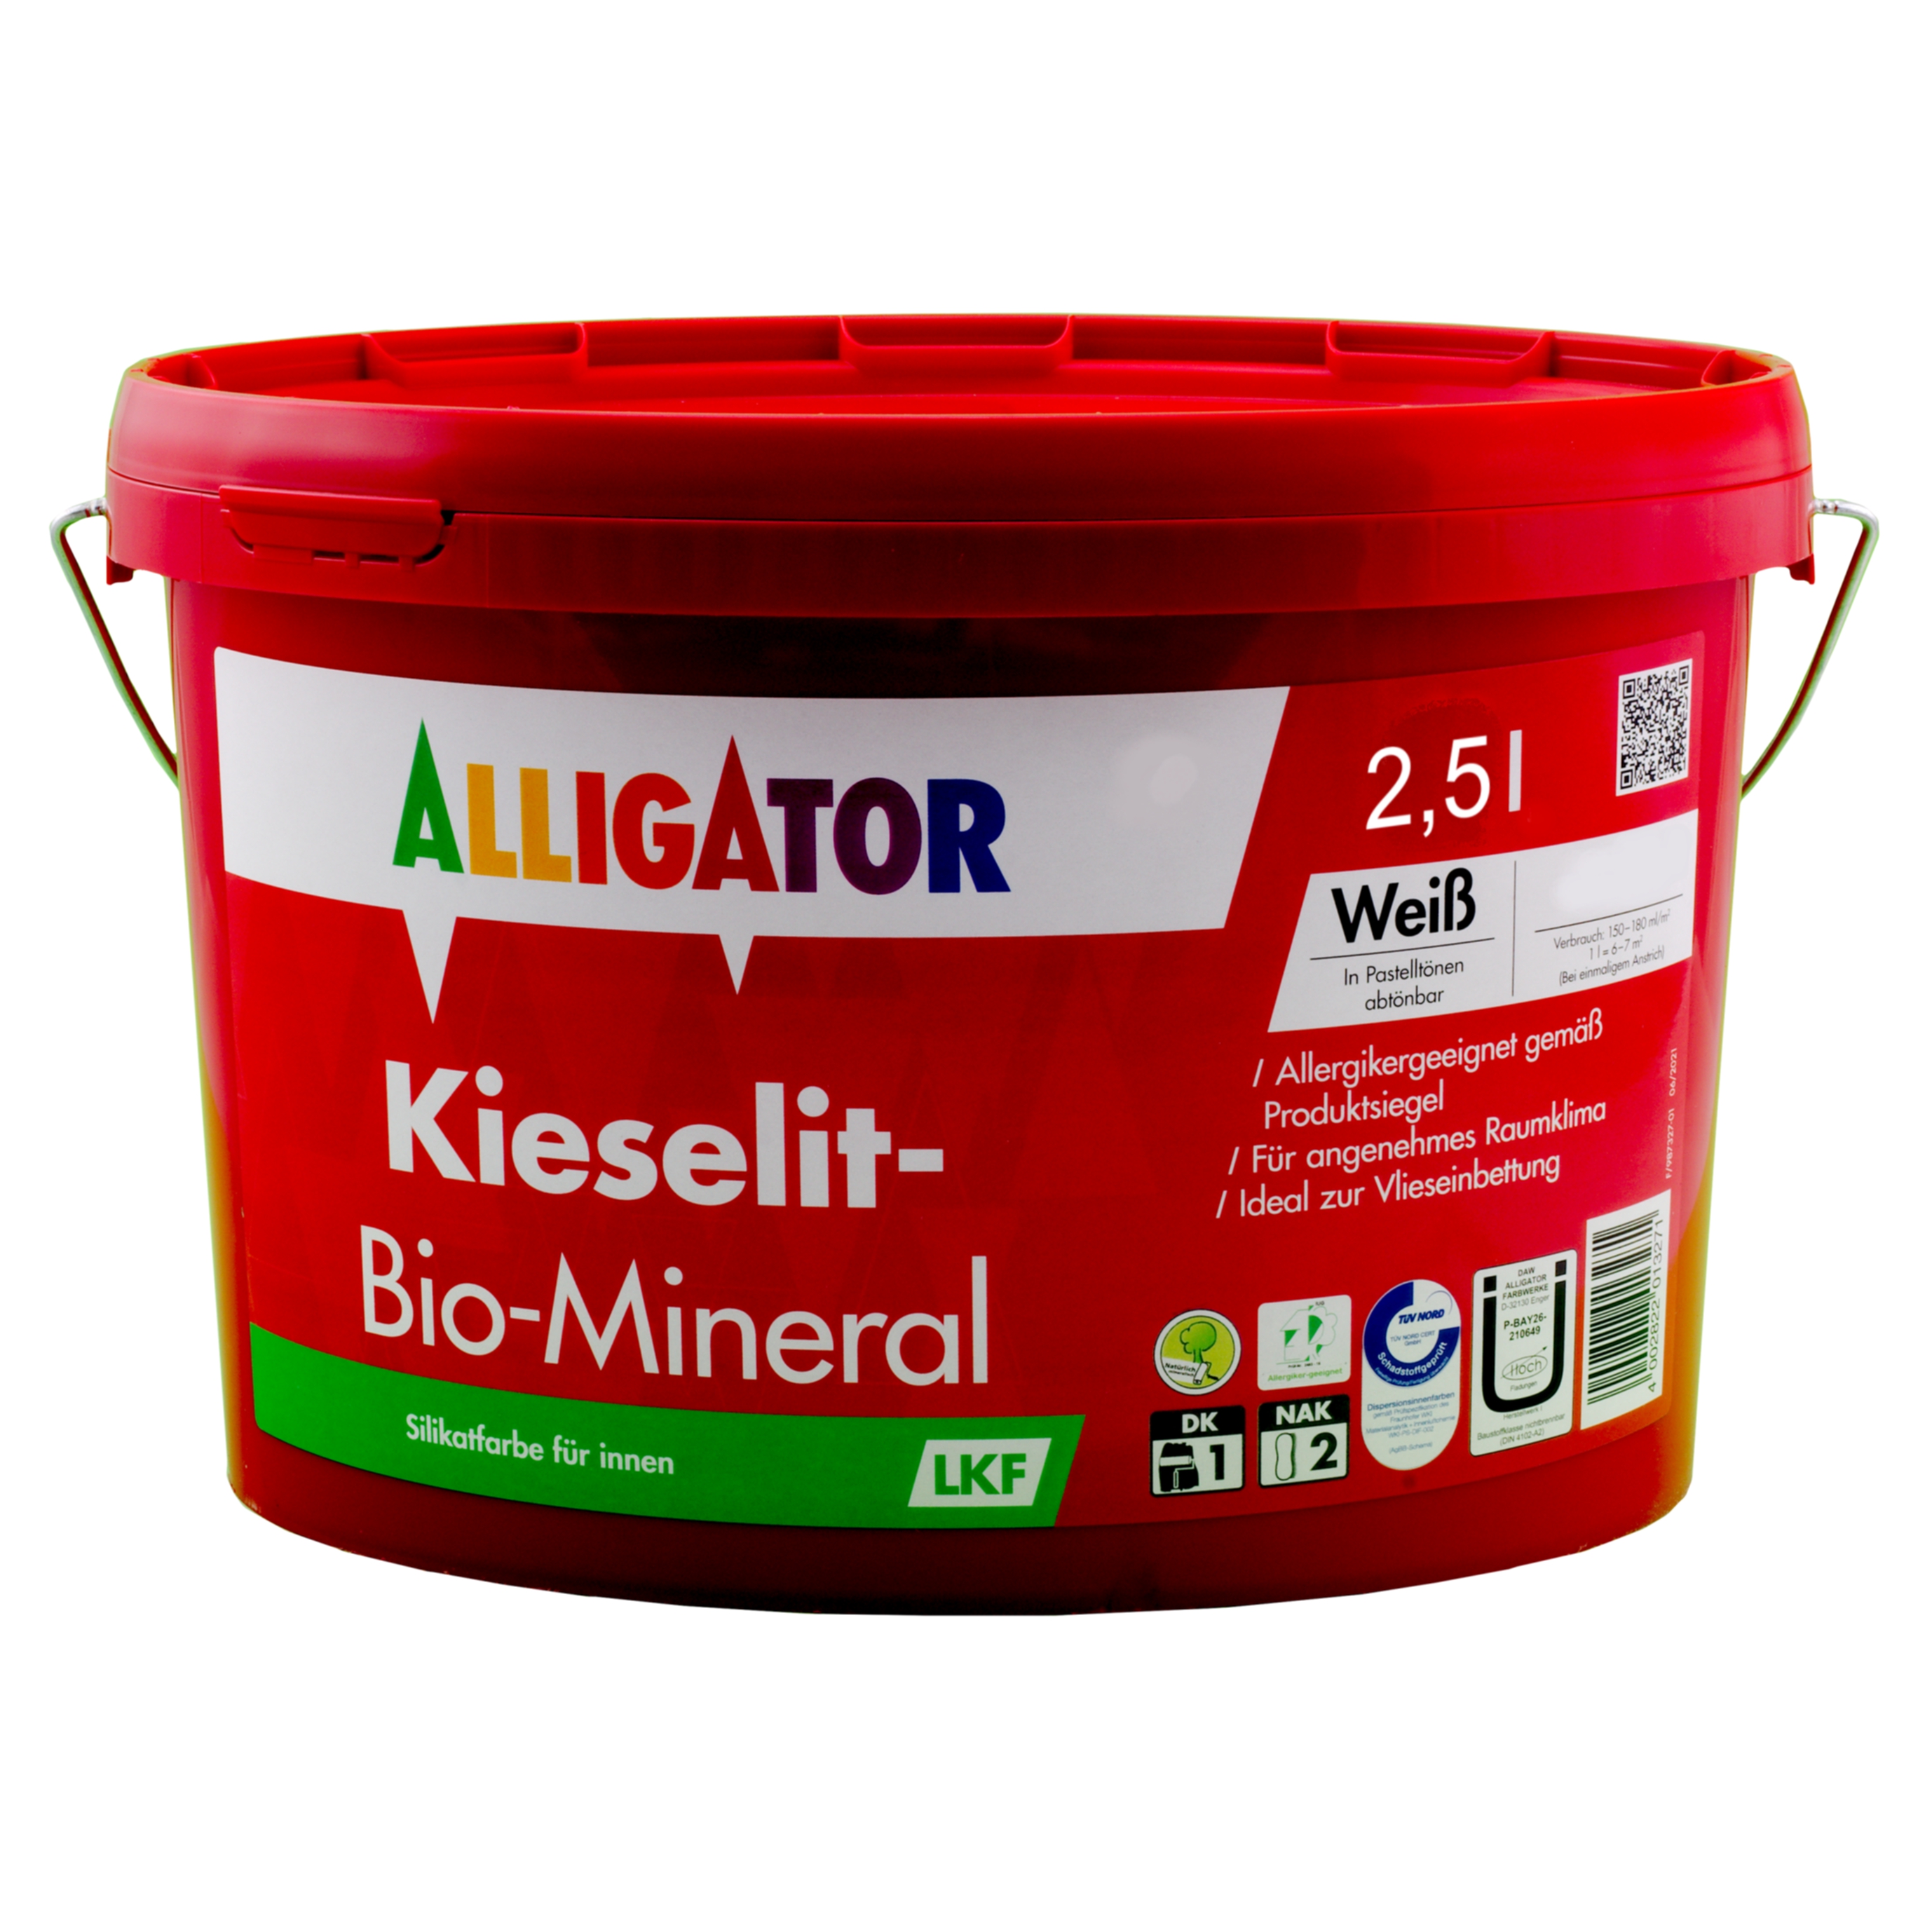 Alligator Kieselit-Bio-Mineral LKF   2,5 ltr. weiß silikat